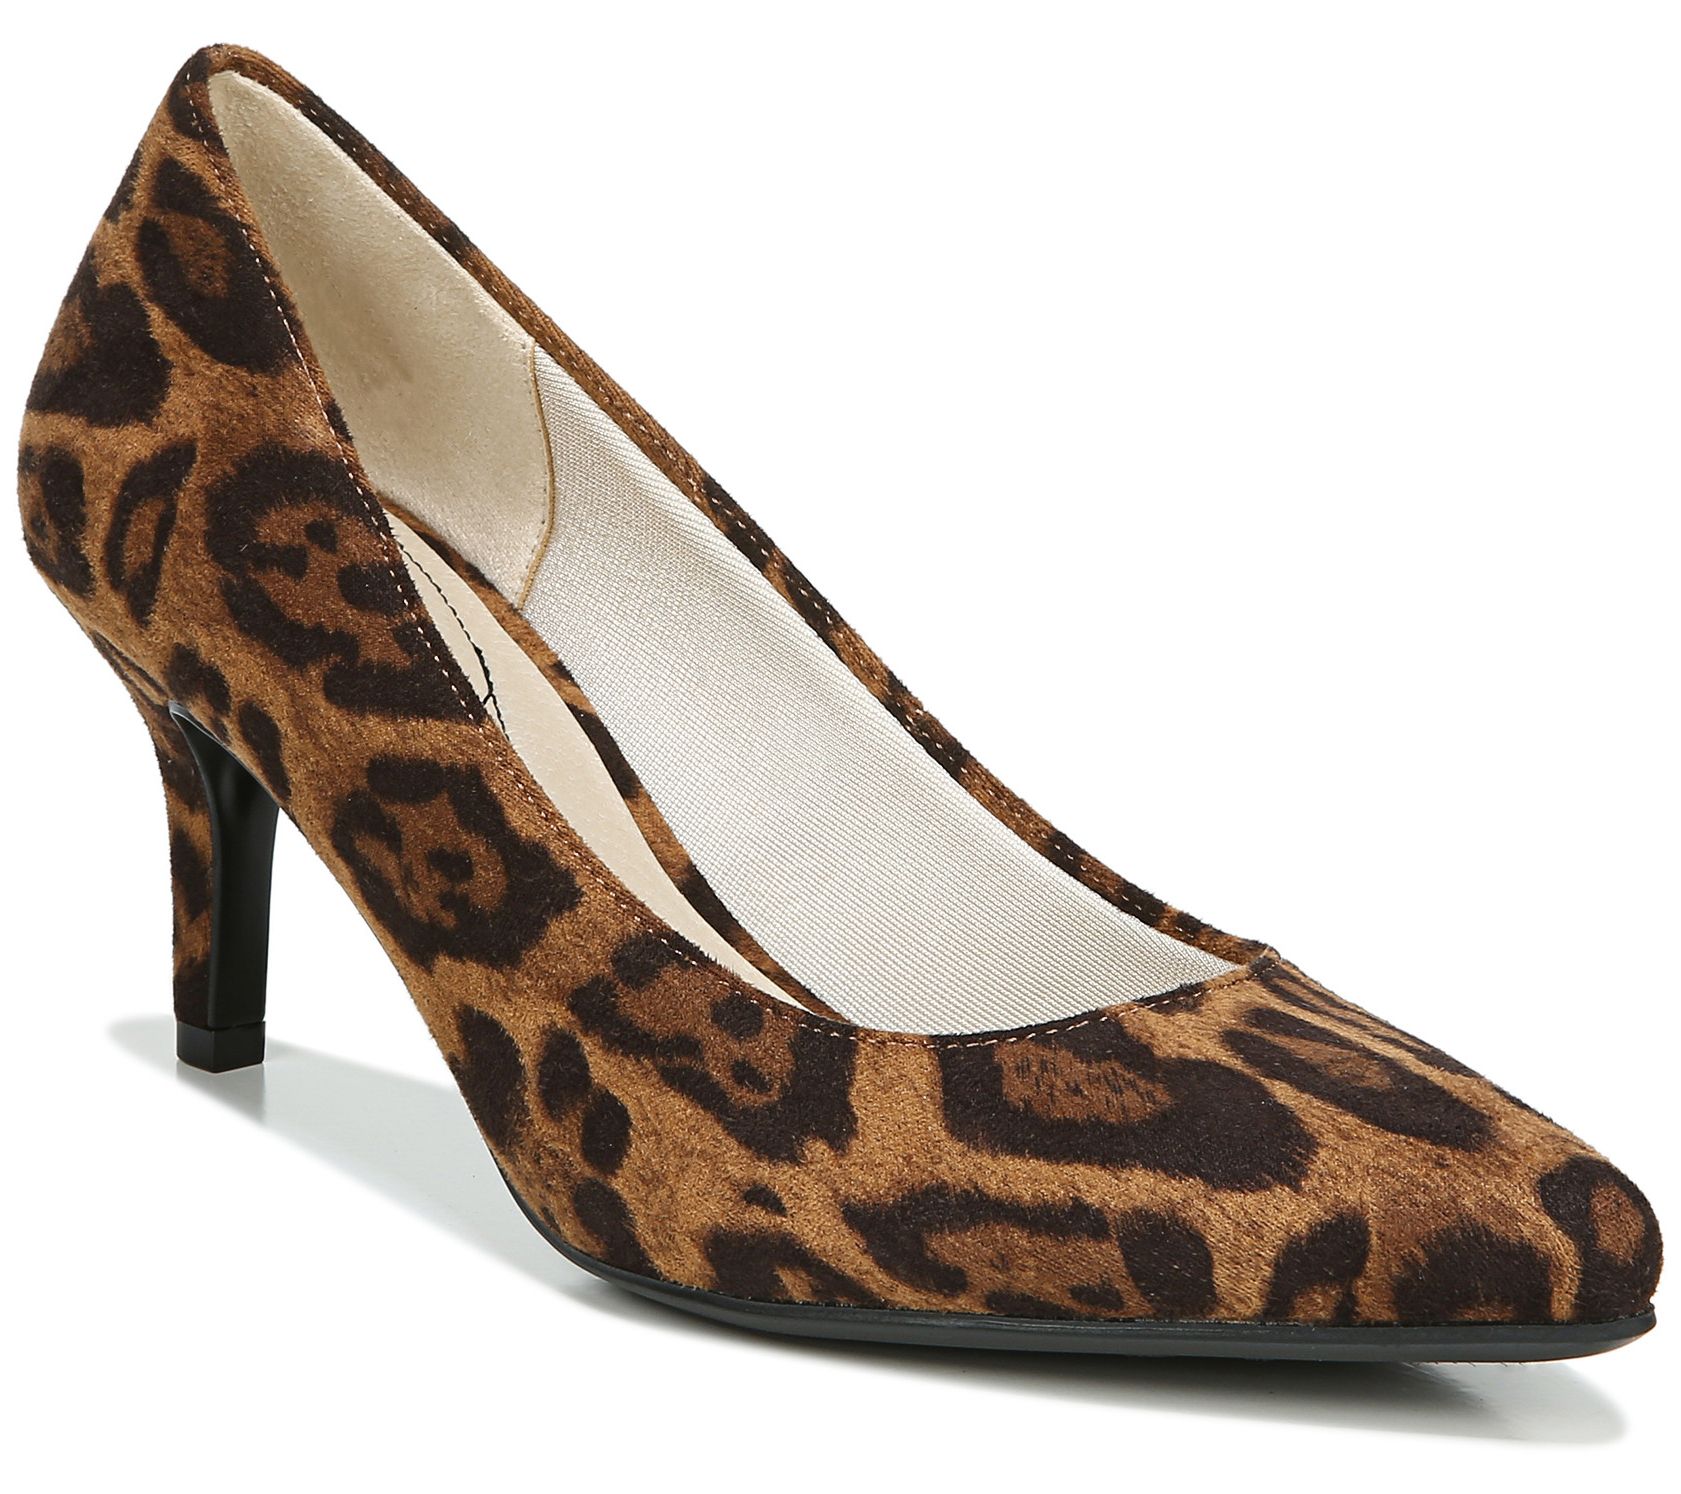 qvc leopard shoes